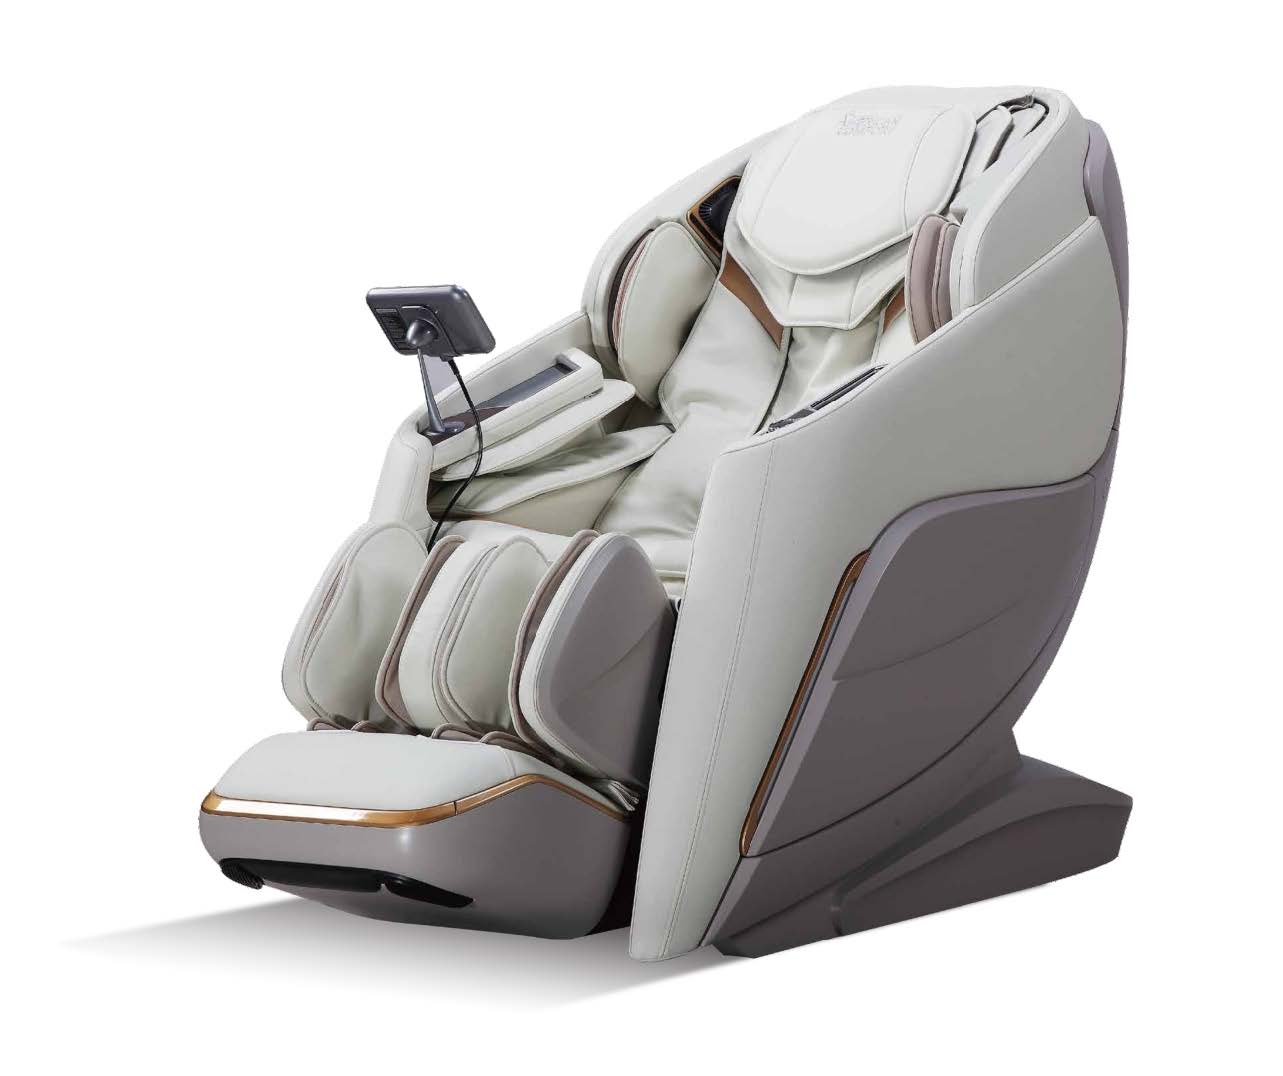 5D Massage Chair in belgaum, 5D Massage Chair Manufacturers